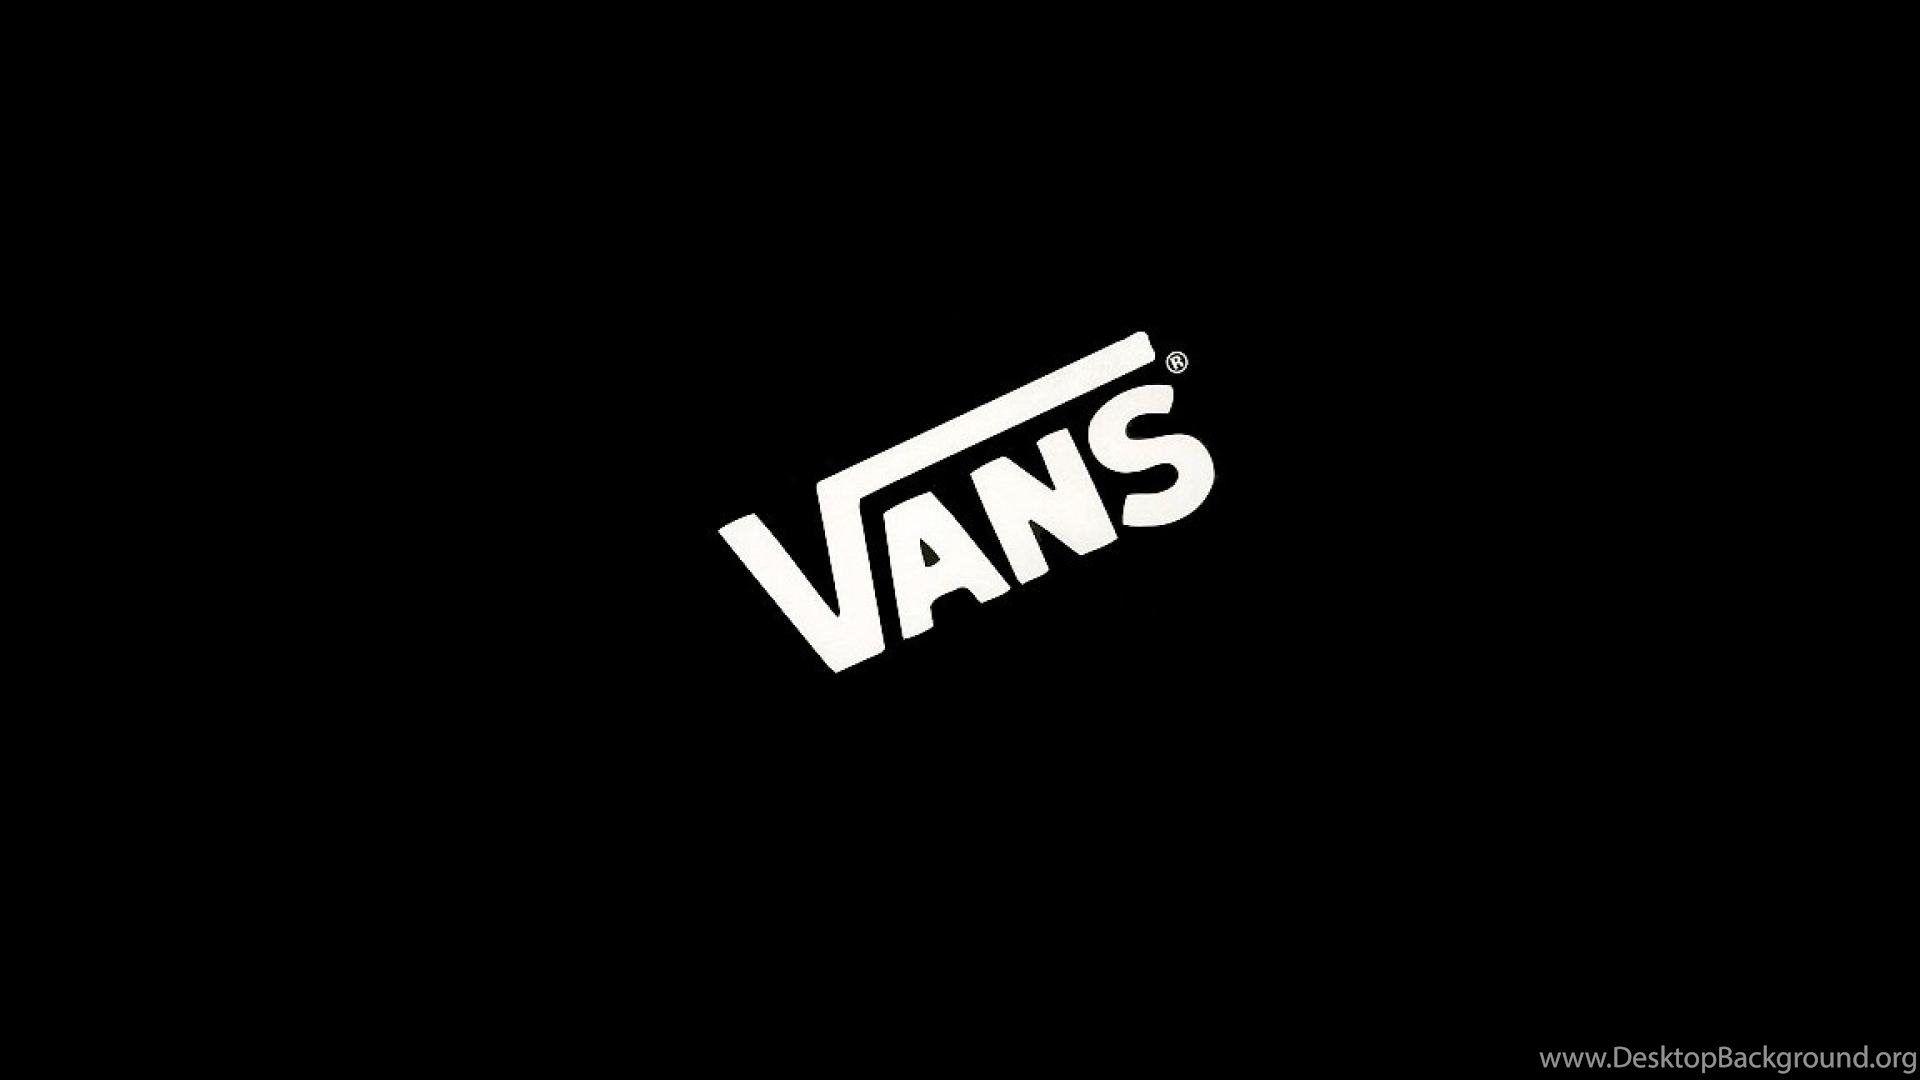 Small Vans Logo - Vans Logo Wallpapers Wallpapers Cave Desktop Background